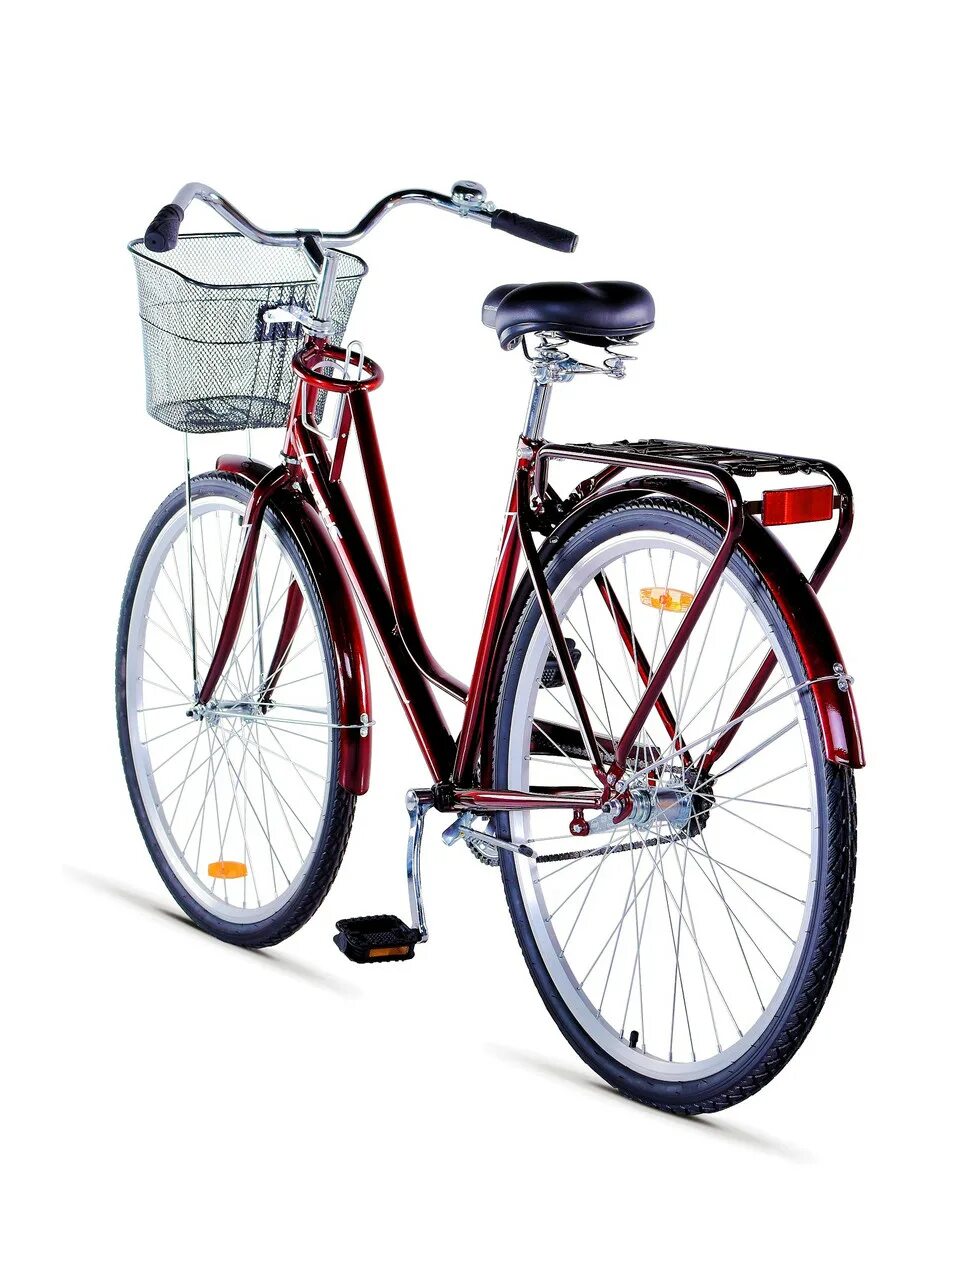 Купить велосипед в беларуси с доставкой. Cubus велосипеды 28. Велосипед Cubus 600. Велосипед Cubus производитель. Велосипед женский.